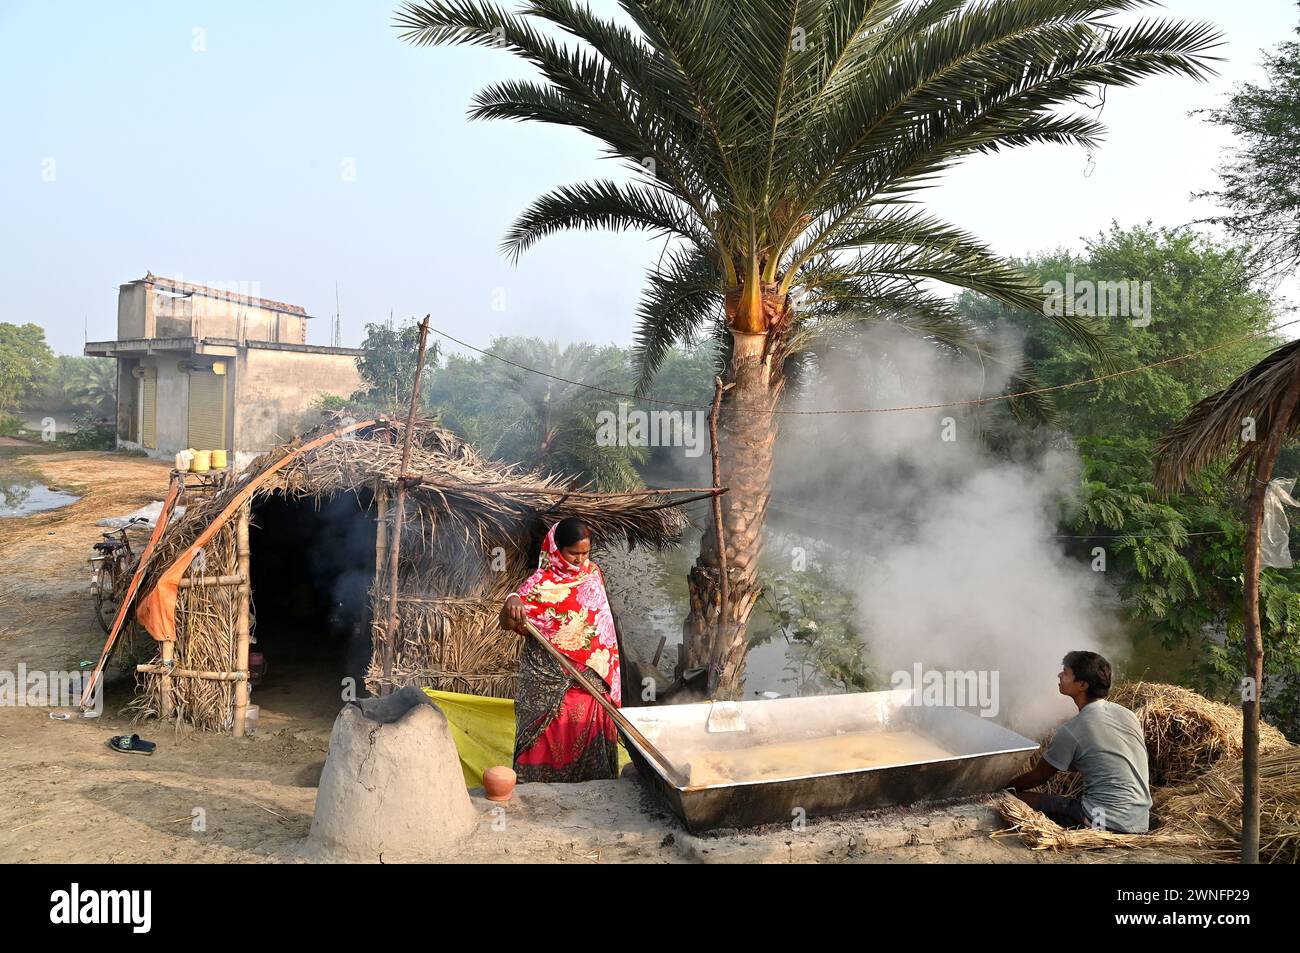 Datteri, jiggery di palme o khajoor gur, è una popolare prelibatezza invernale bengalese, fa bollire la linfa della palma da dattero per preparare il jiggery nel remoto villaggio. Foto Stock